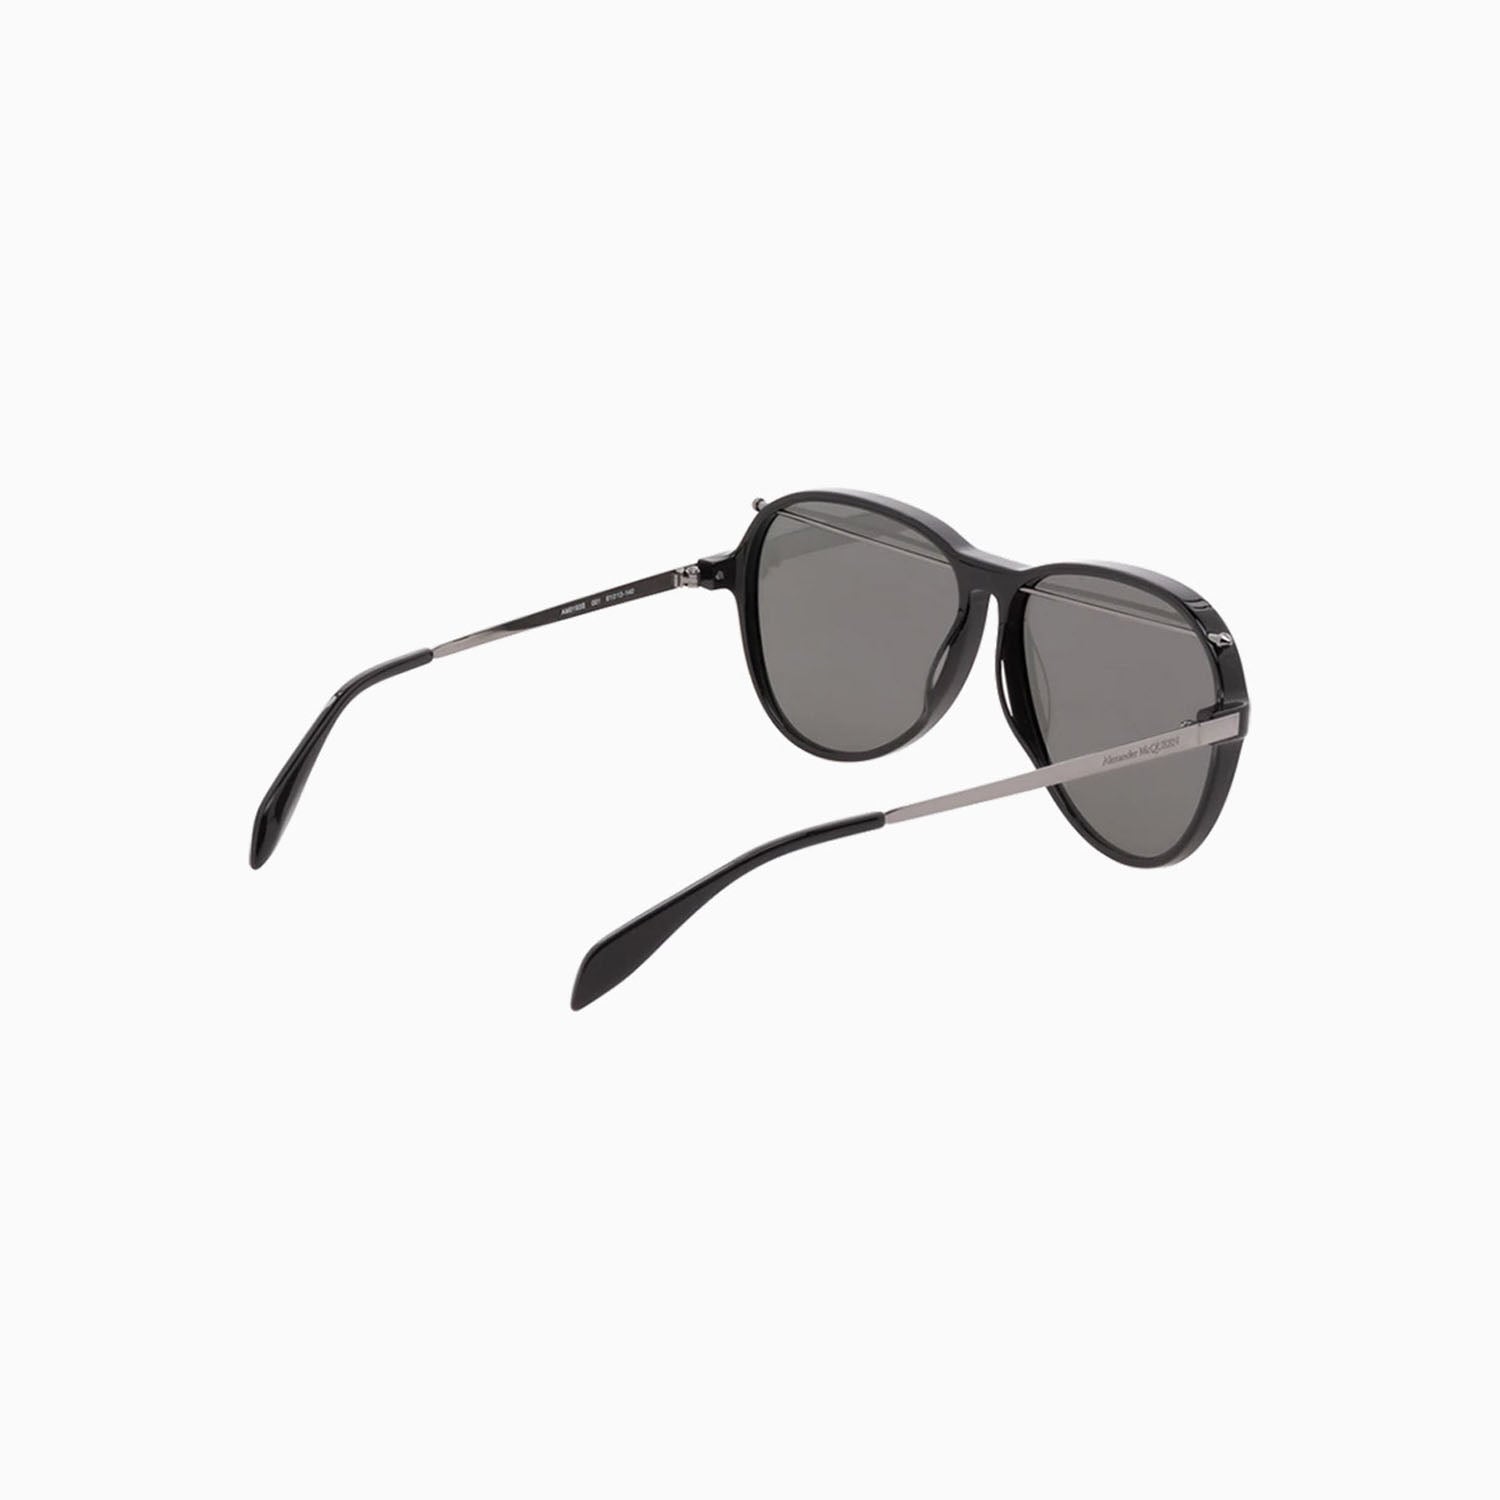 alexander-mcqueen-black-acetate-sunglasses-am0193s-001